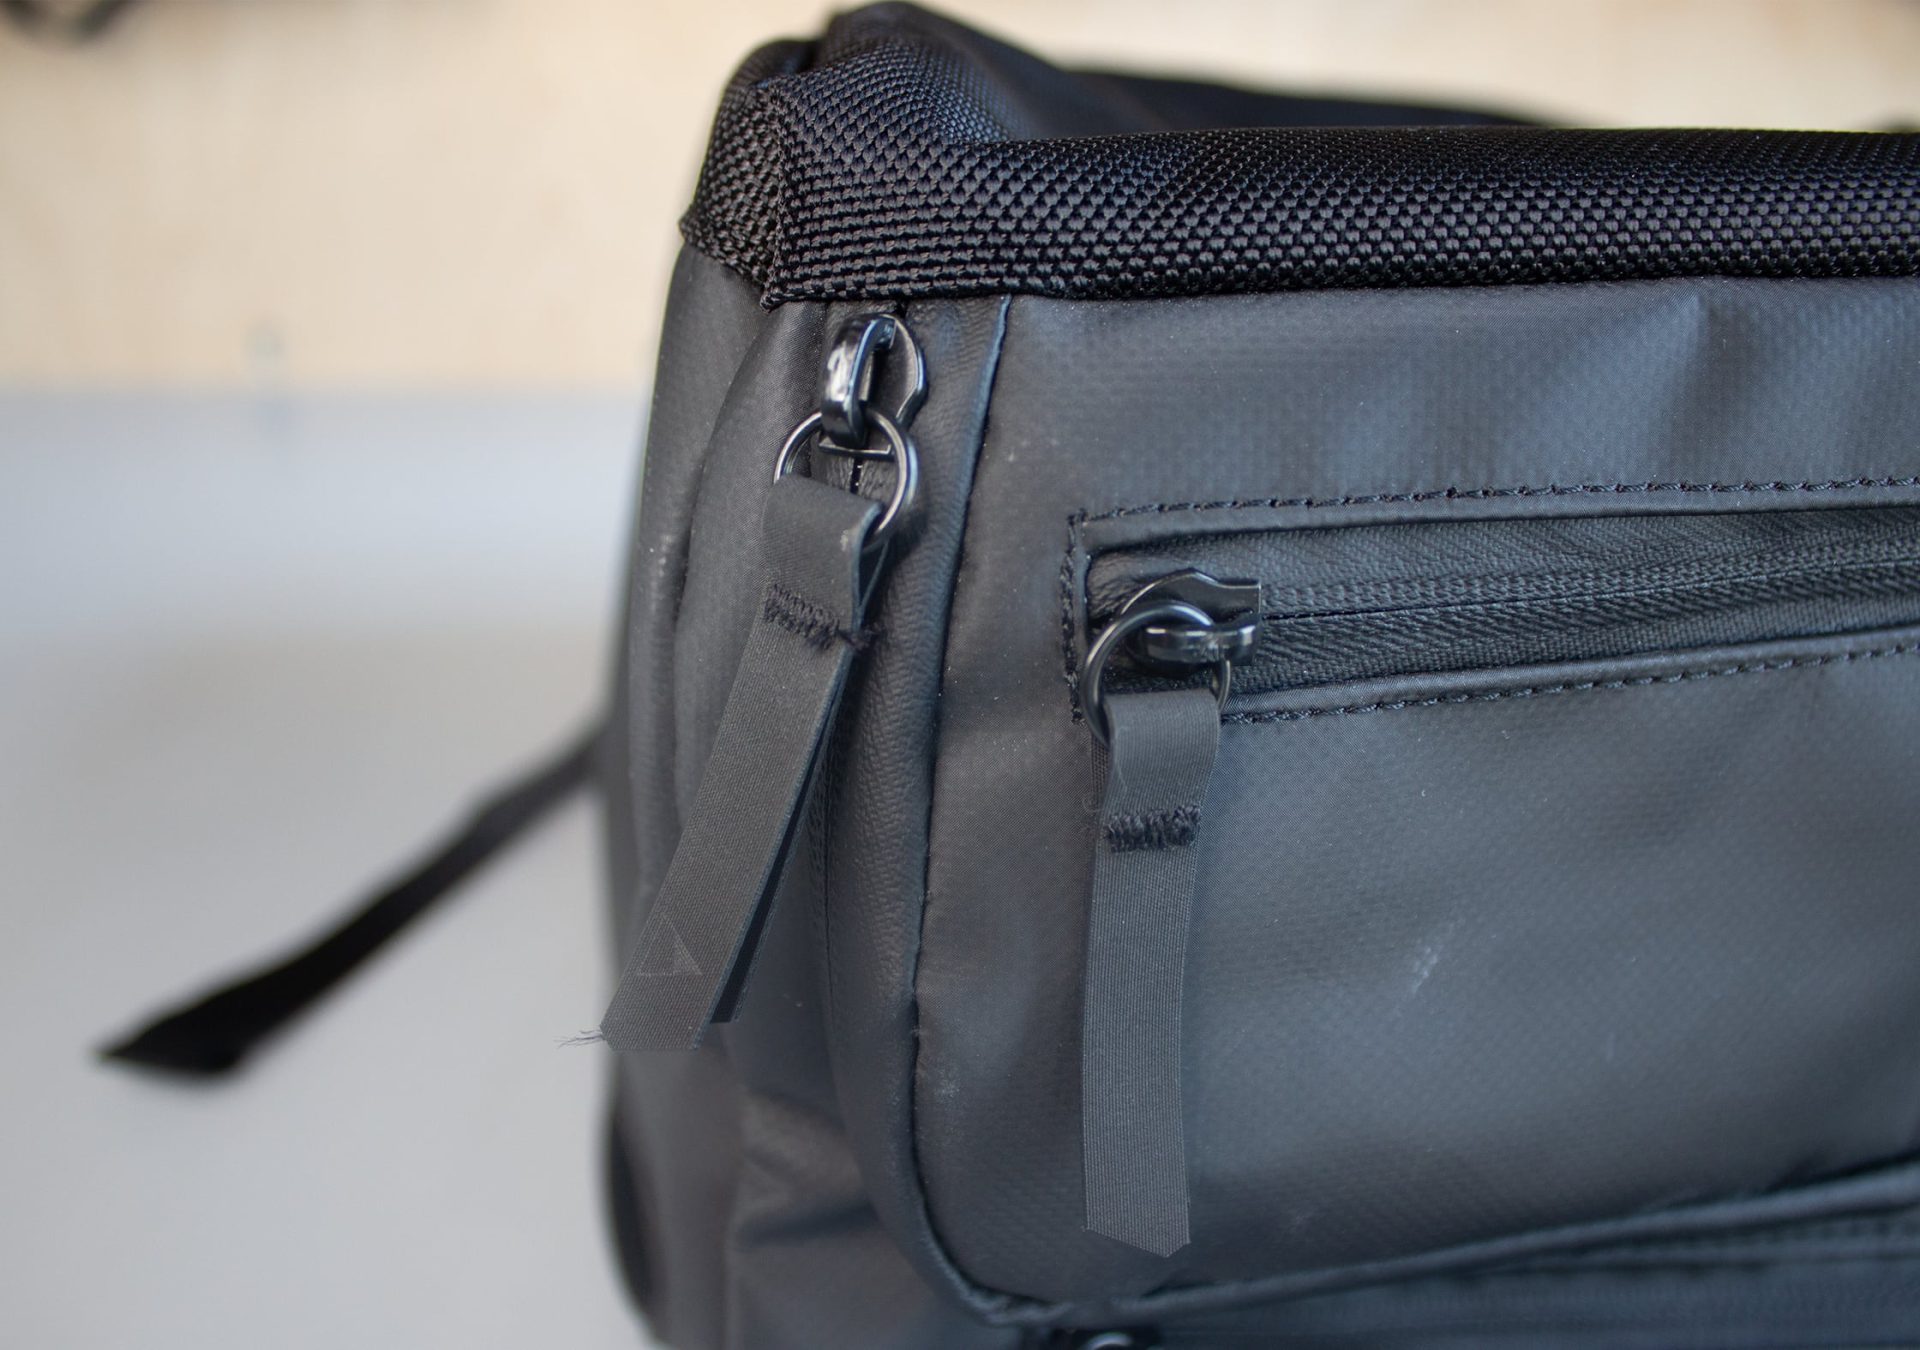 NOMATIC Travel Bag Zipper Pulls